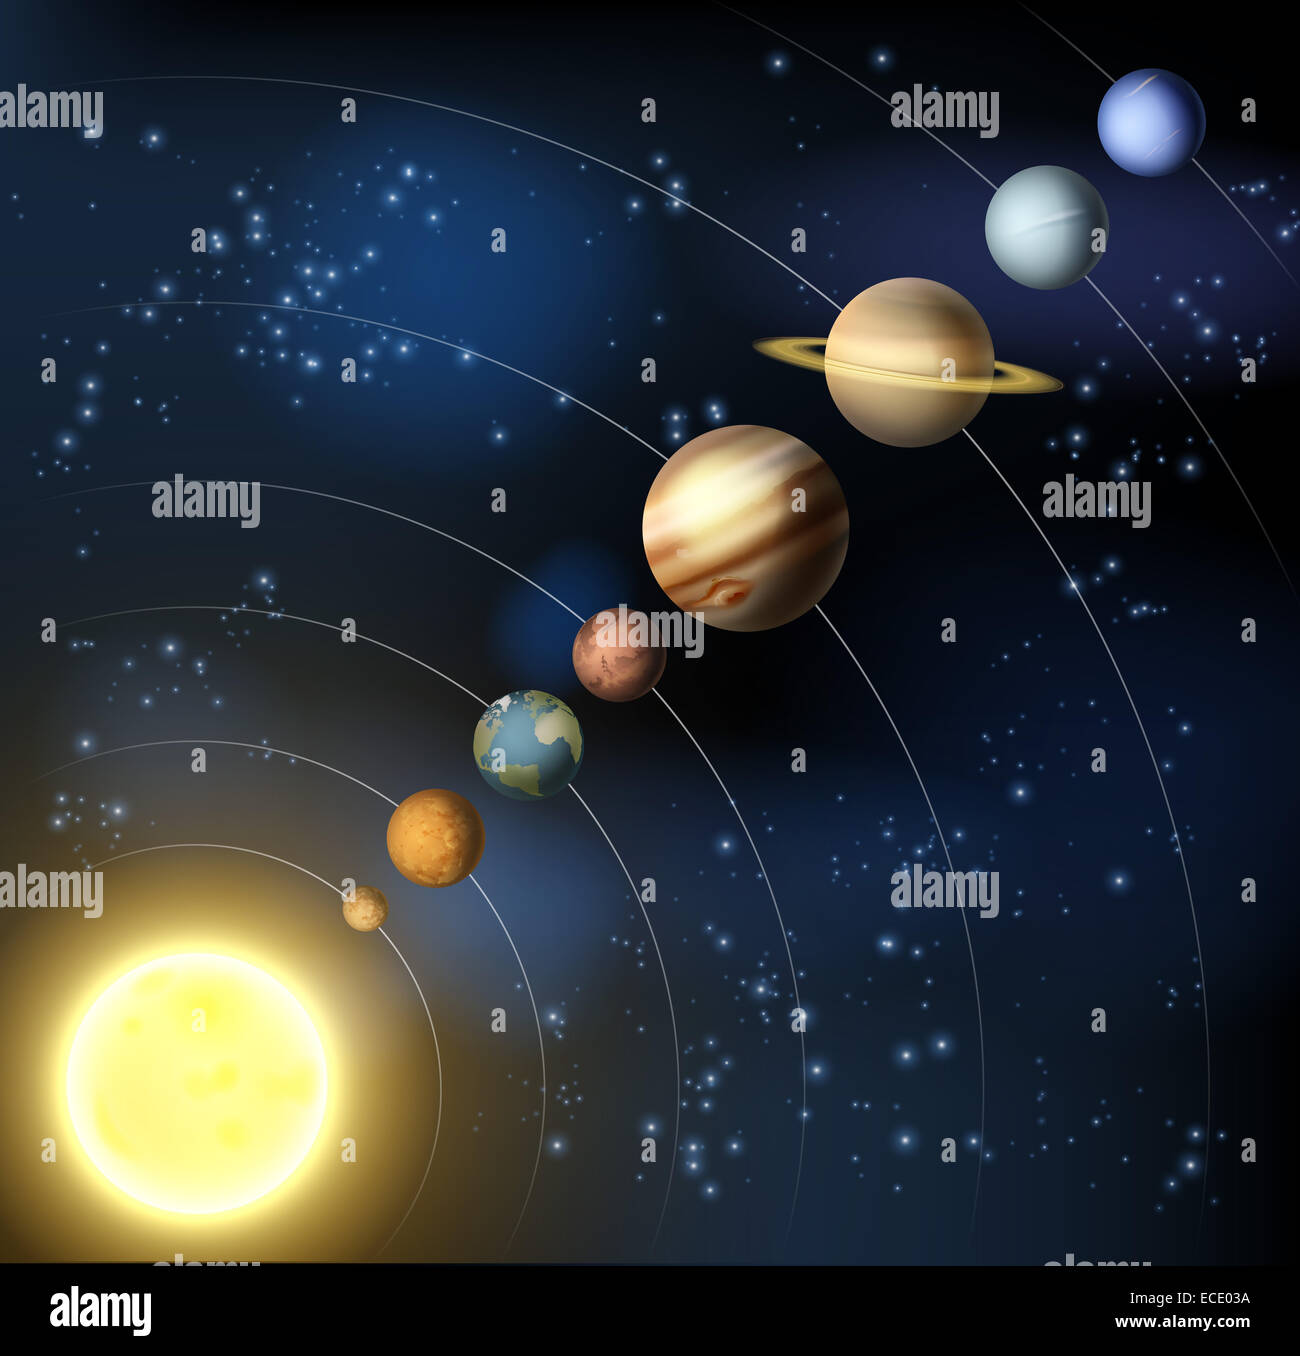 Une illustration des planètes de notre système solaire en orbite aorund le soleil. Banque D'Images